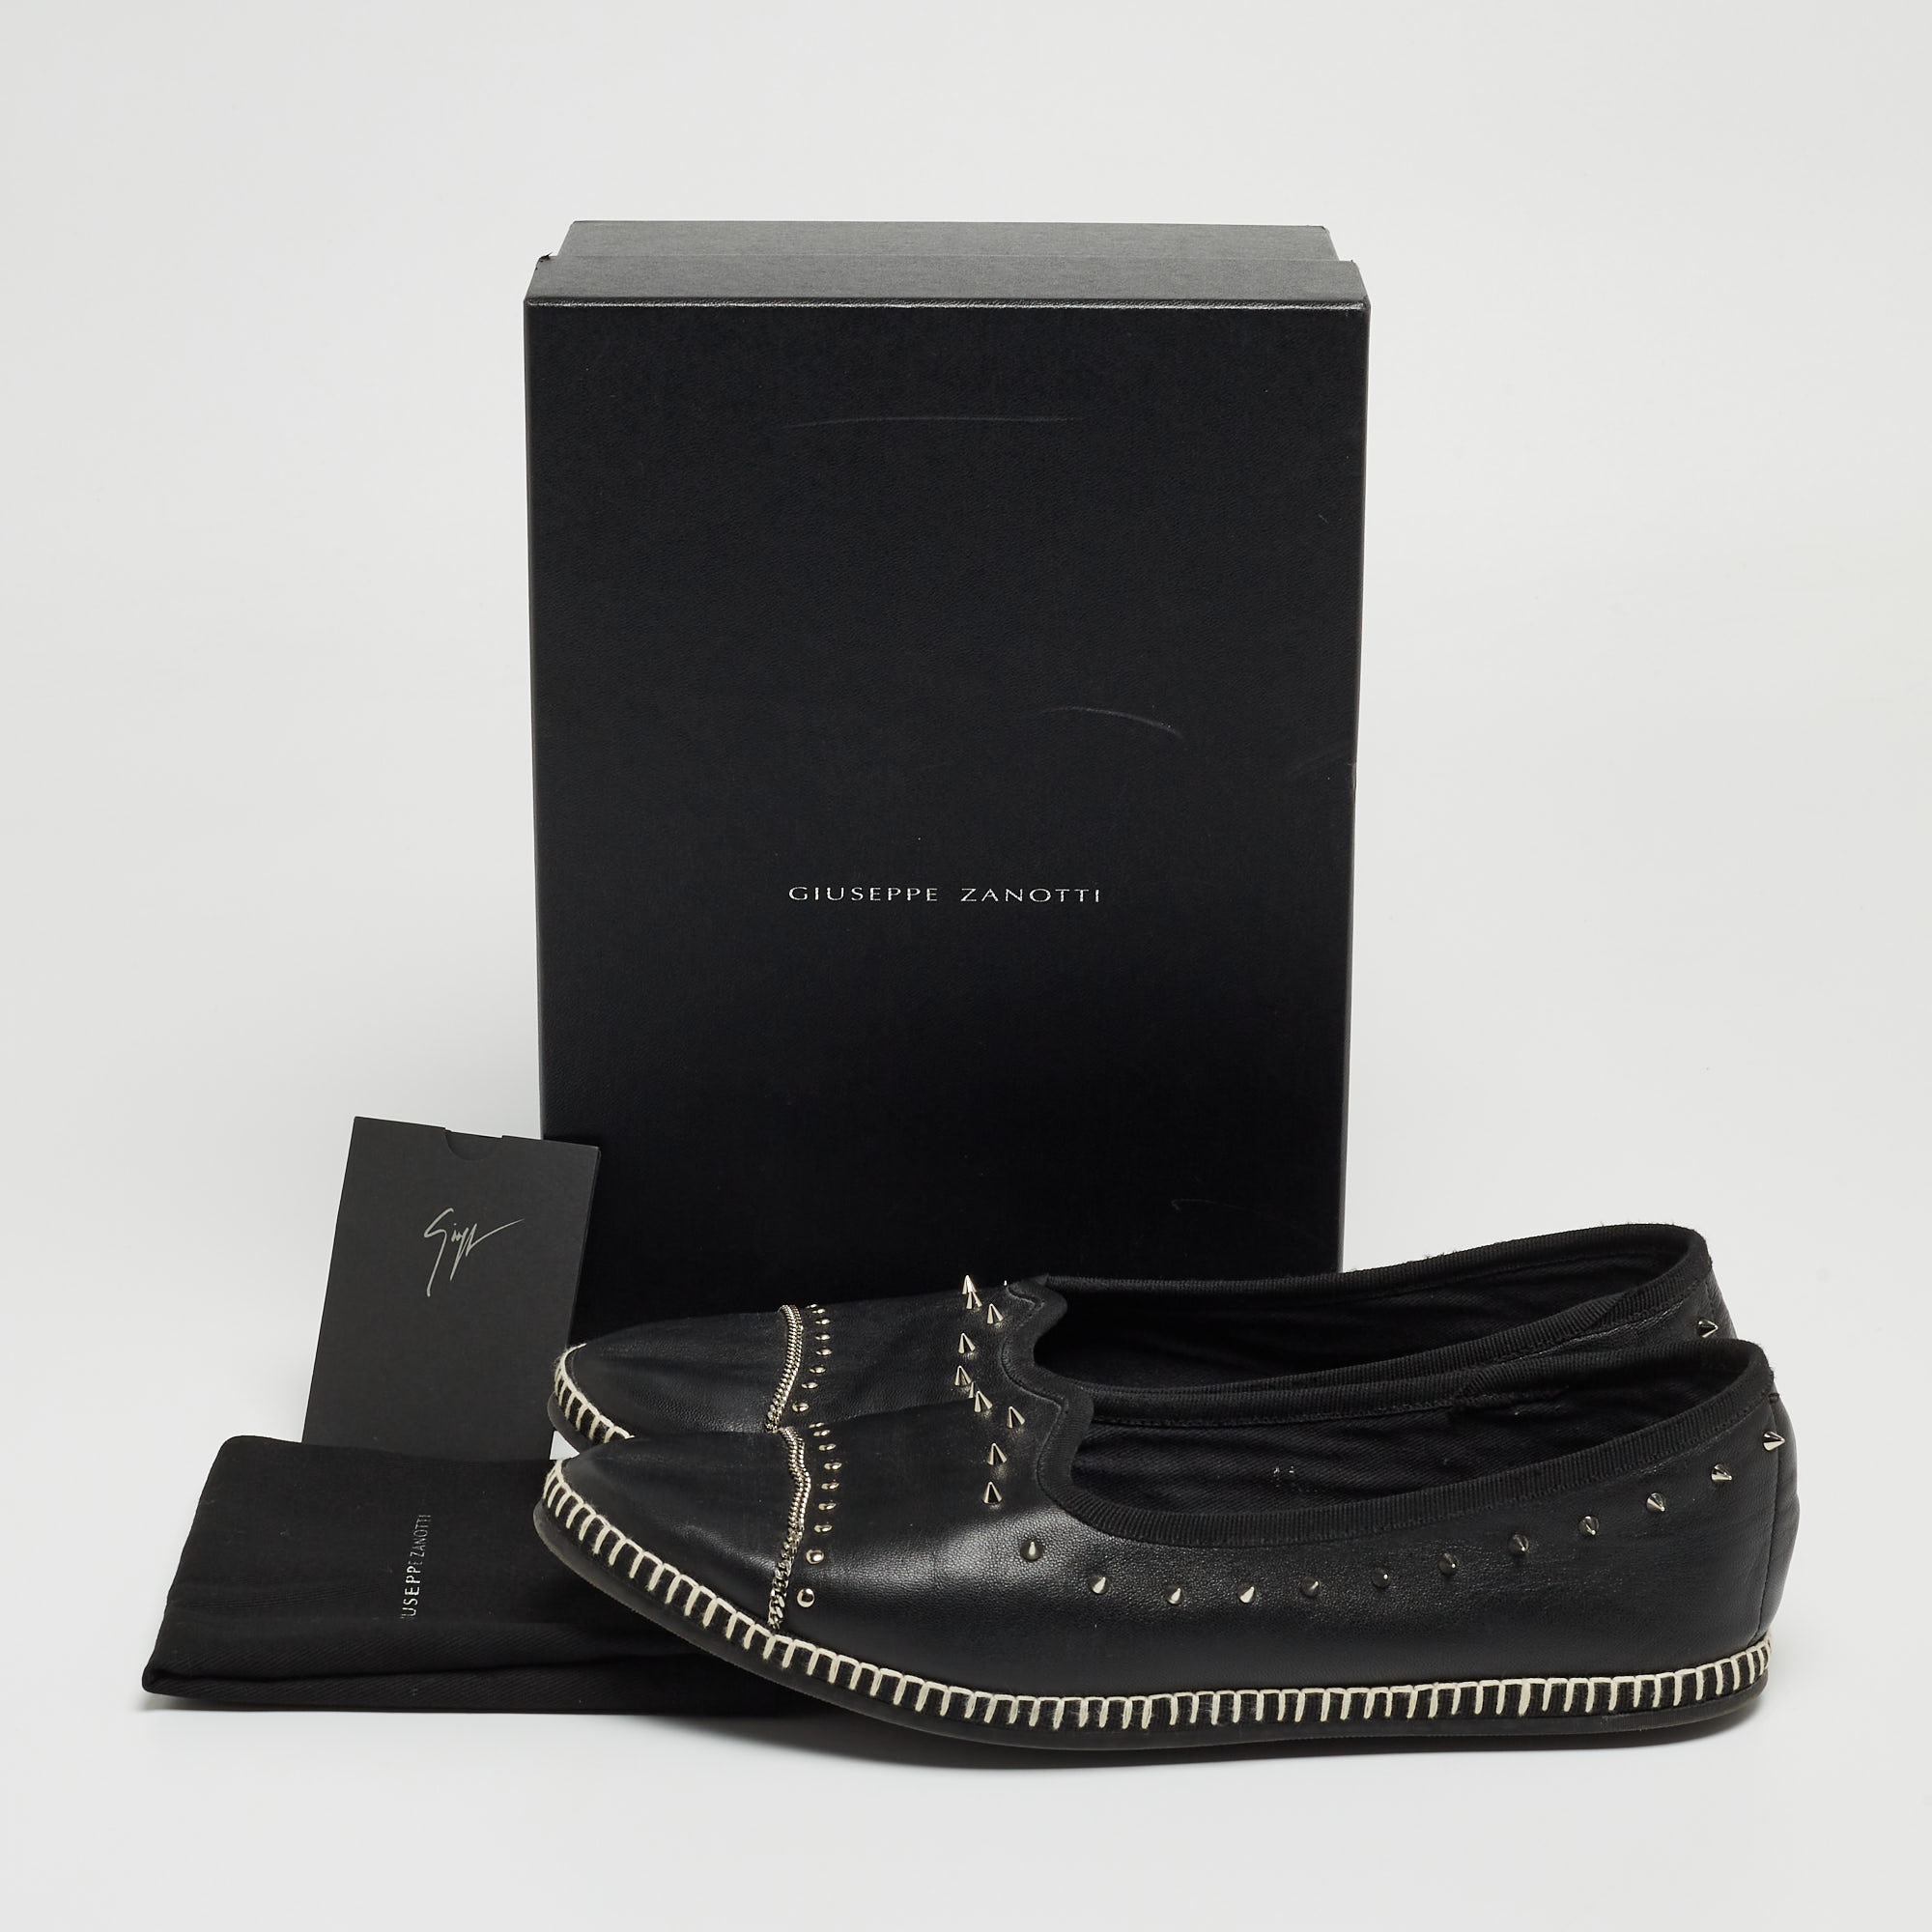 Giuseppe Zanotti Black Leather Studded Veronica Loafer Size 41